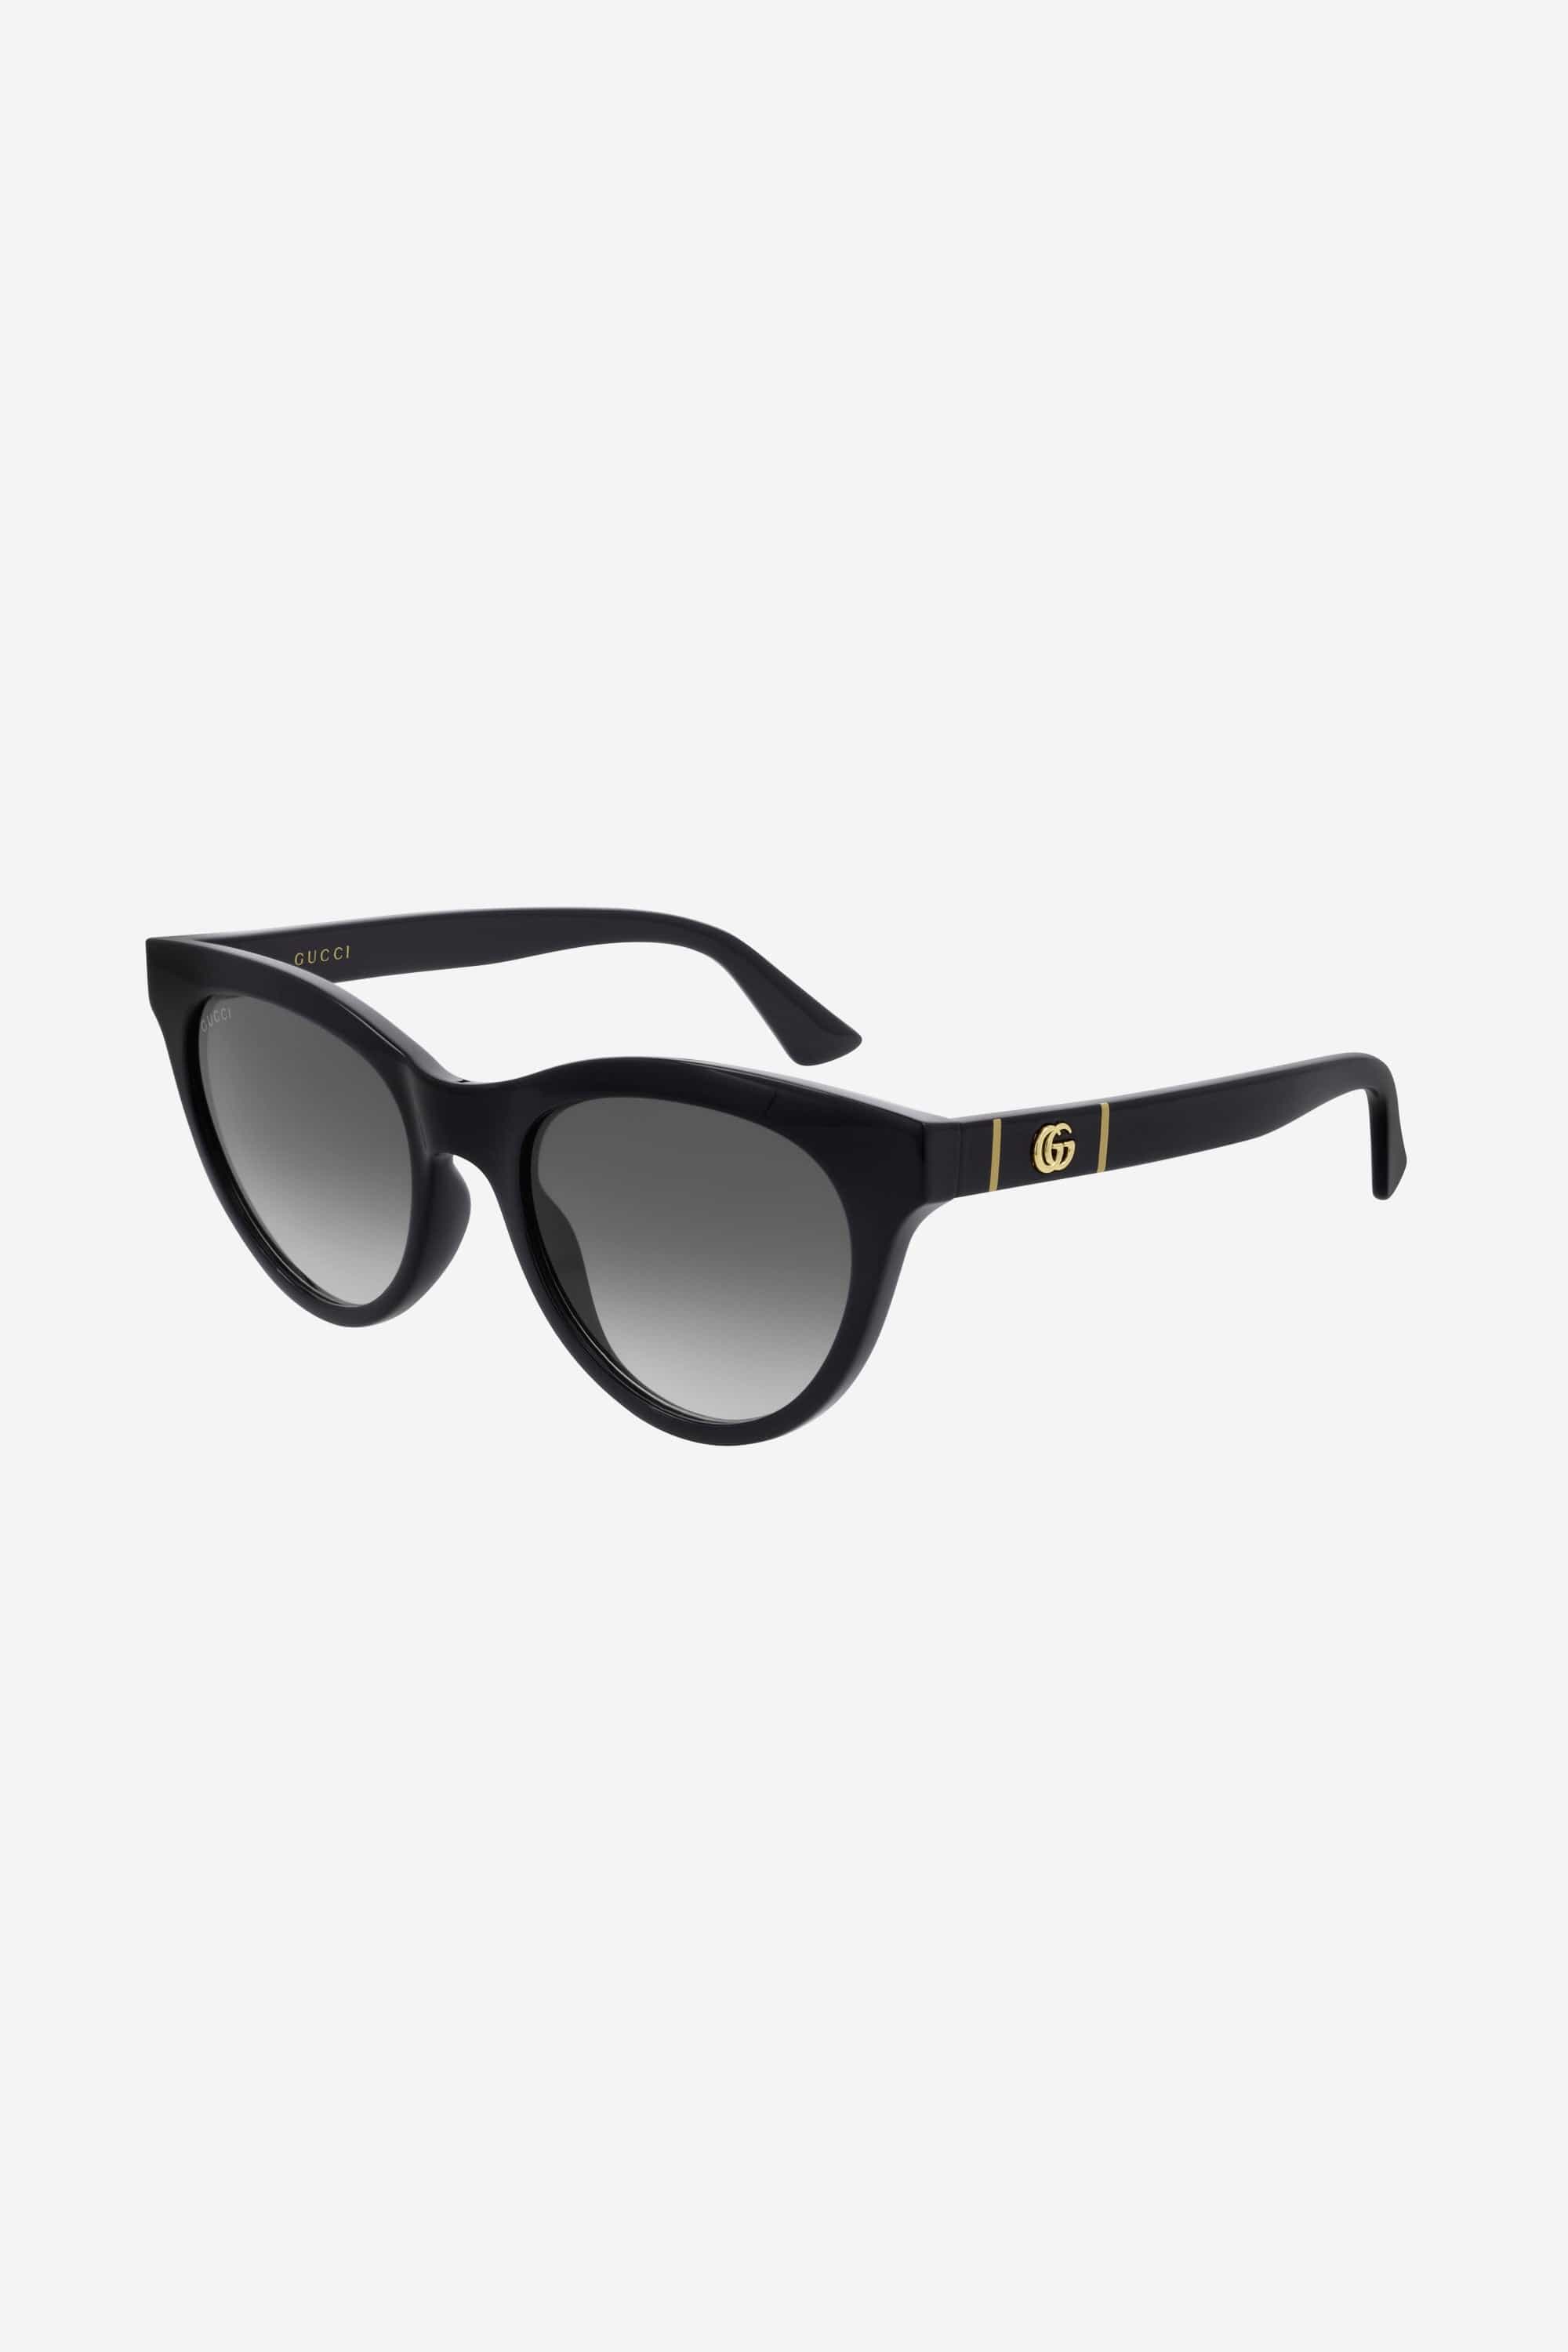 Gucci soft cat-eye femenine black sunglasses - Eyewear Club